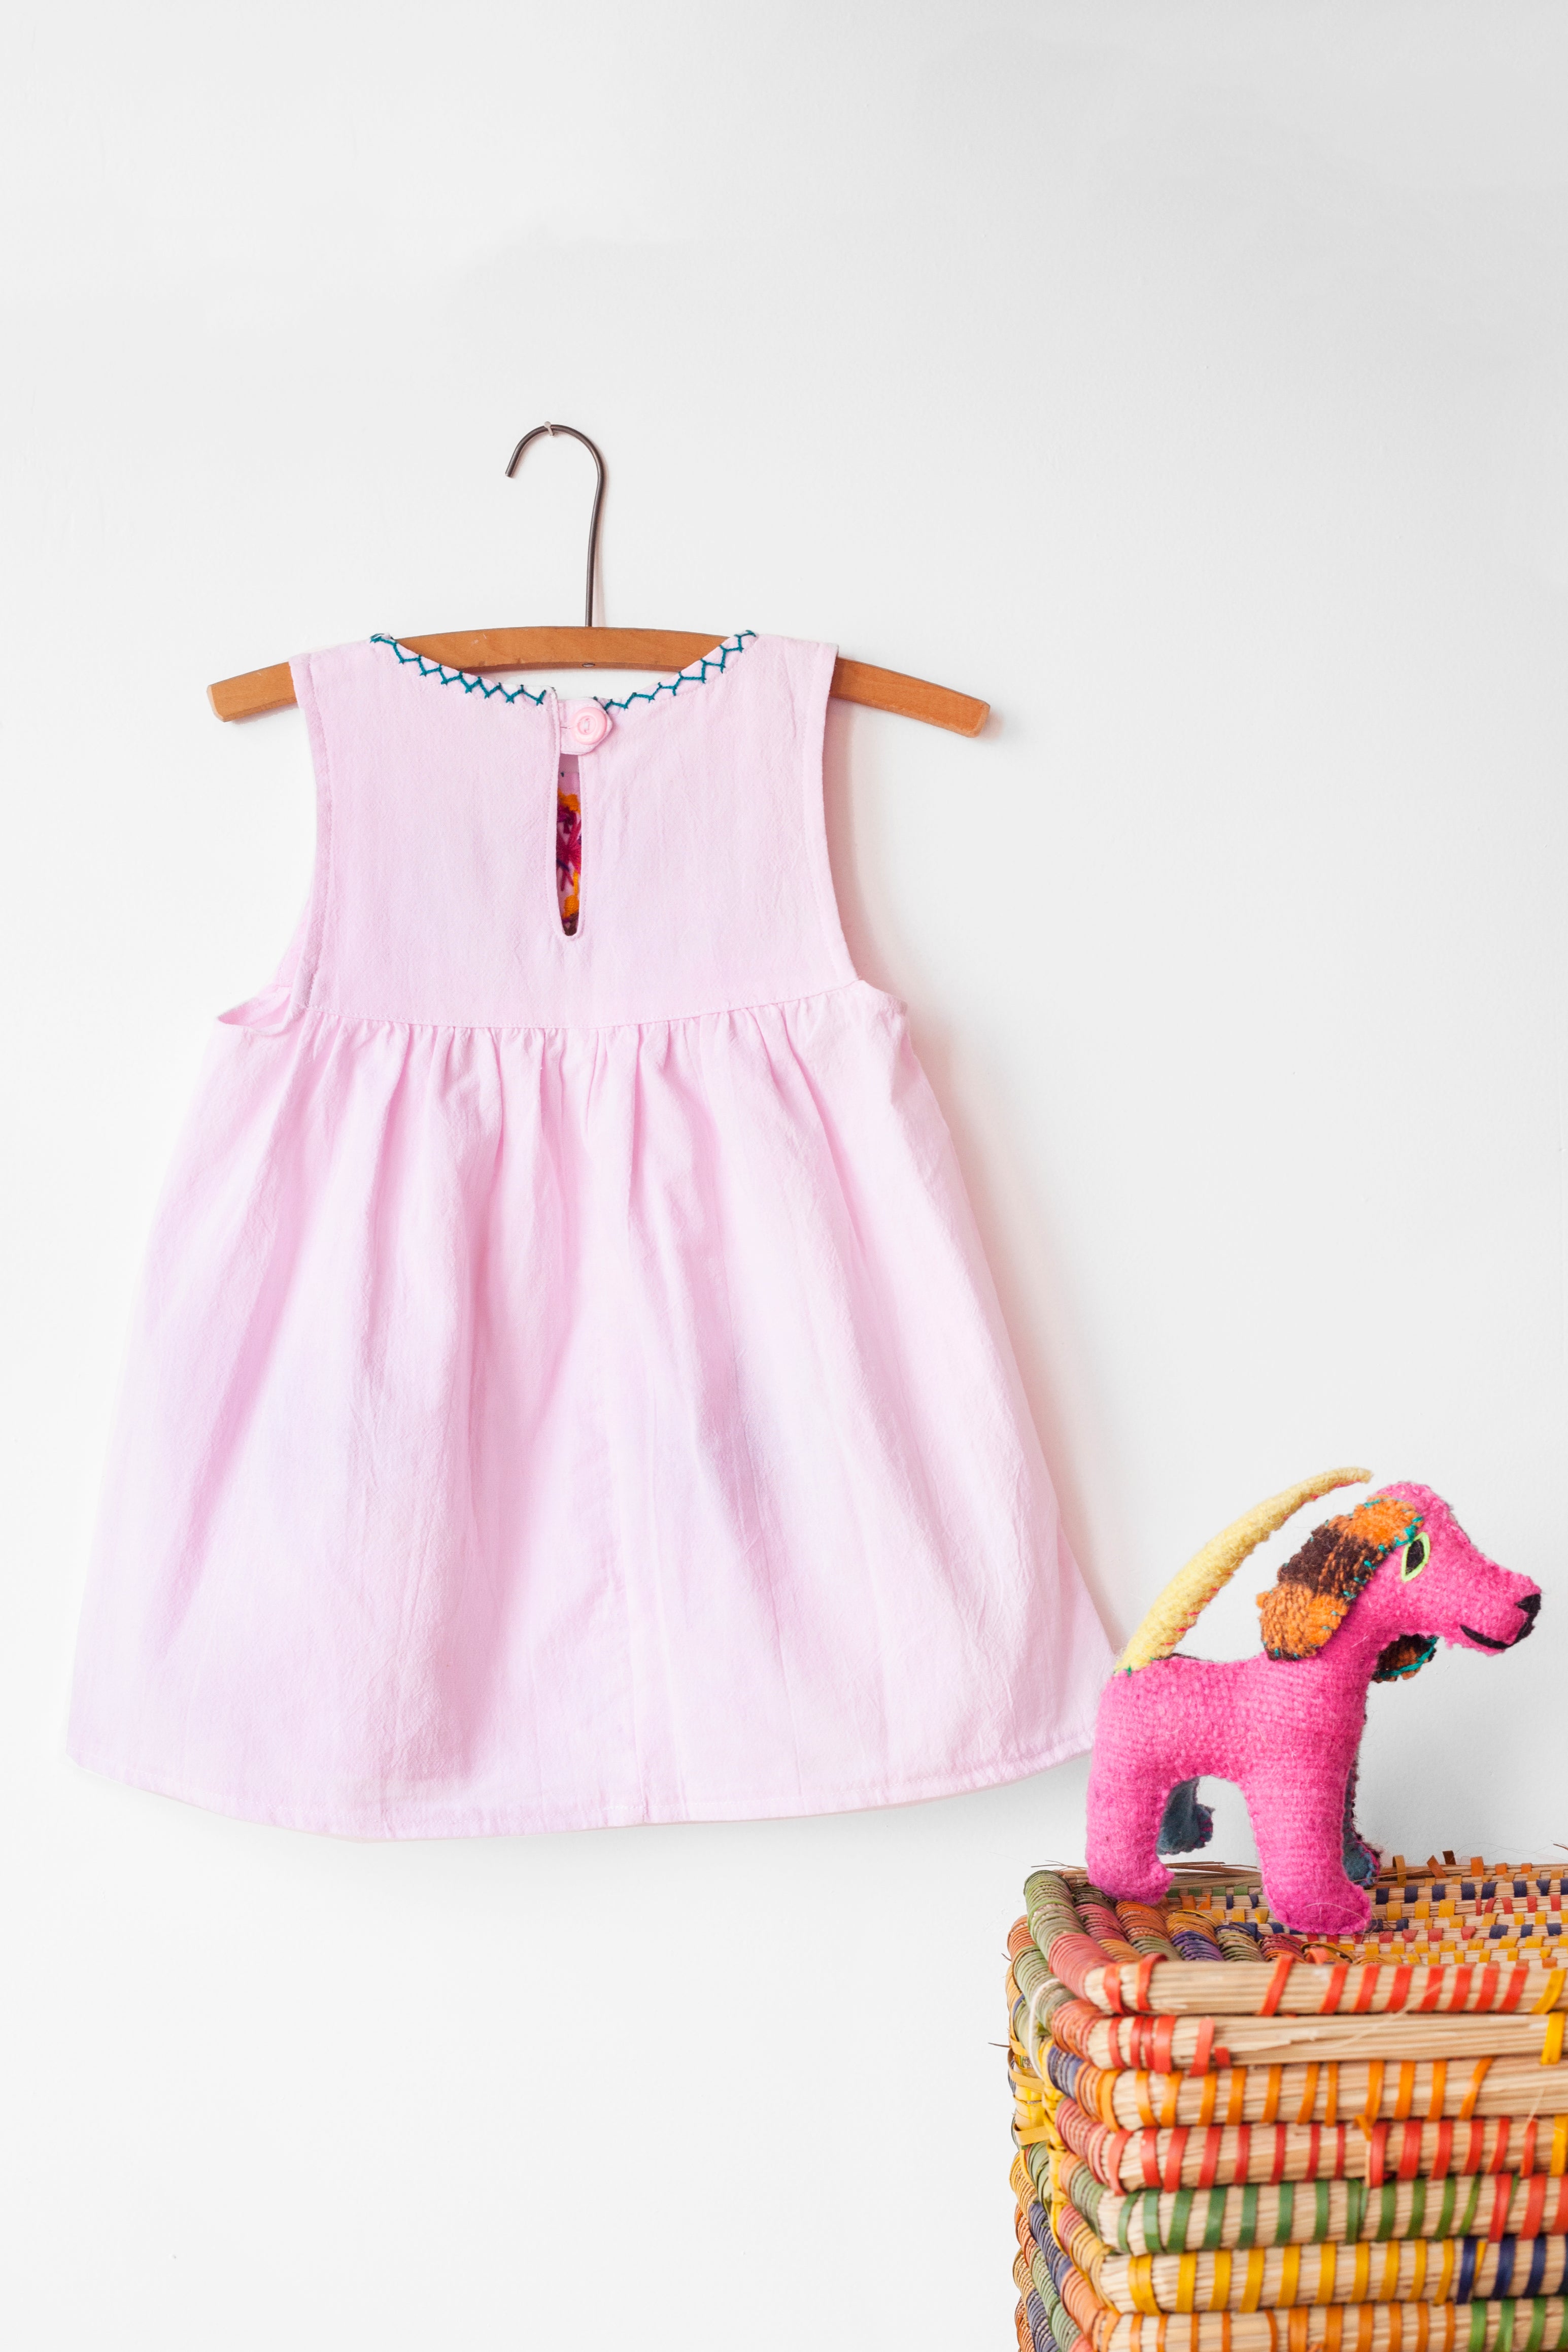 Reverse of kids sleeveless light pink sun dress, showing light pink button closure at neck.